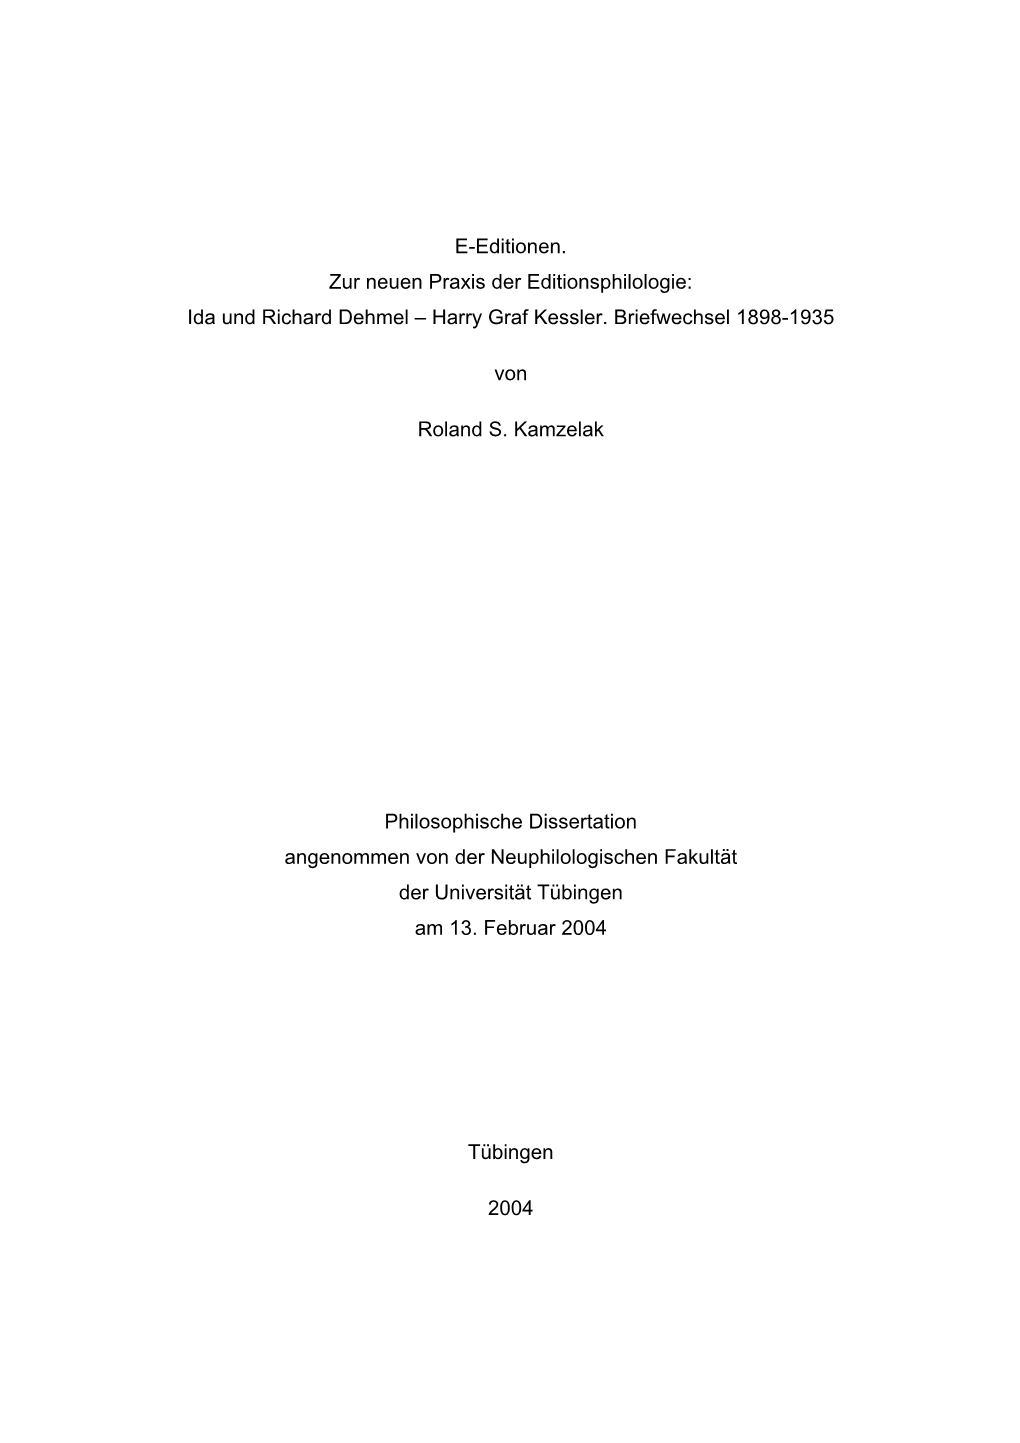 E-Editionen. Zur Neuen Praxis Der Editionsphilologie: Ida Und Richard Dehmel – Harry Graf Kessler. Briefwechsel 1898-1935